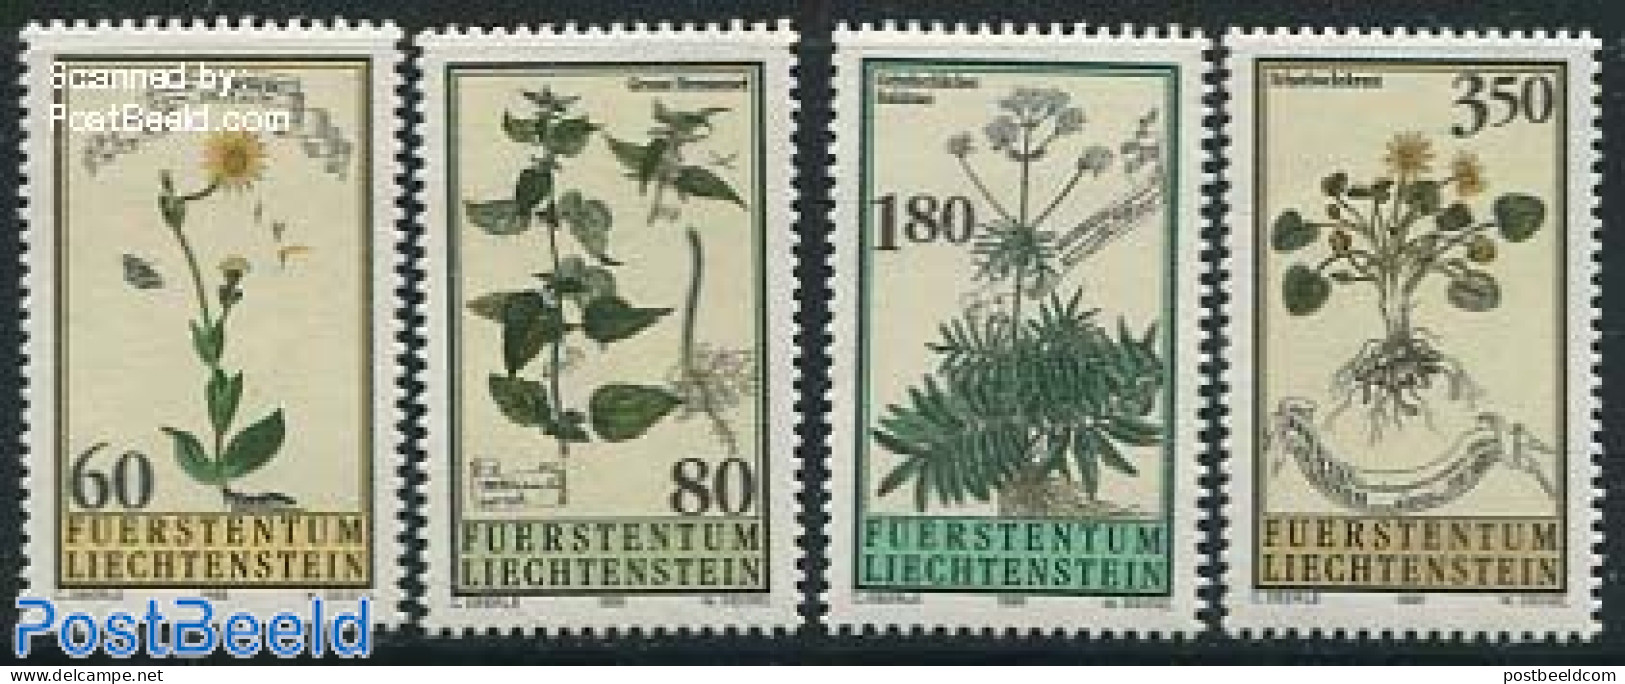 Liechtenstein 1995 Flowers 4v, Mint NH, Nature - Flowers & Plants - Neufs